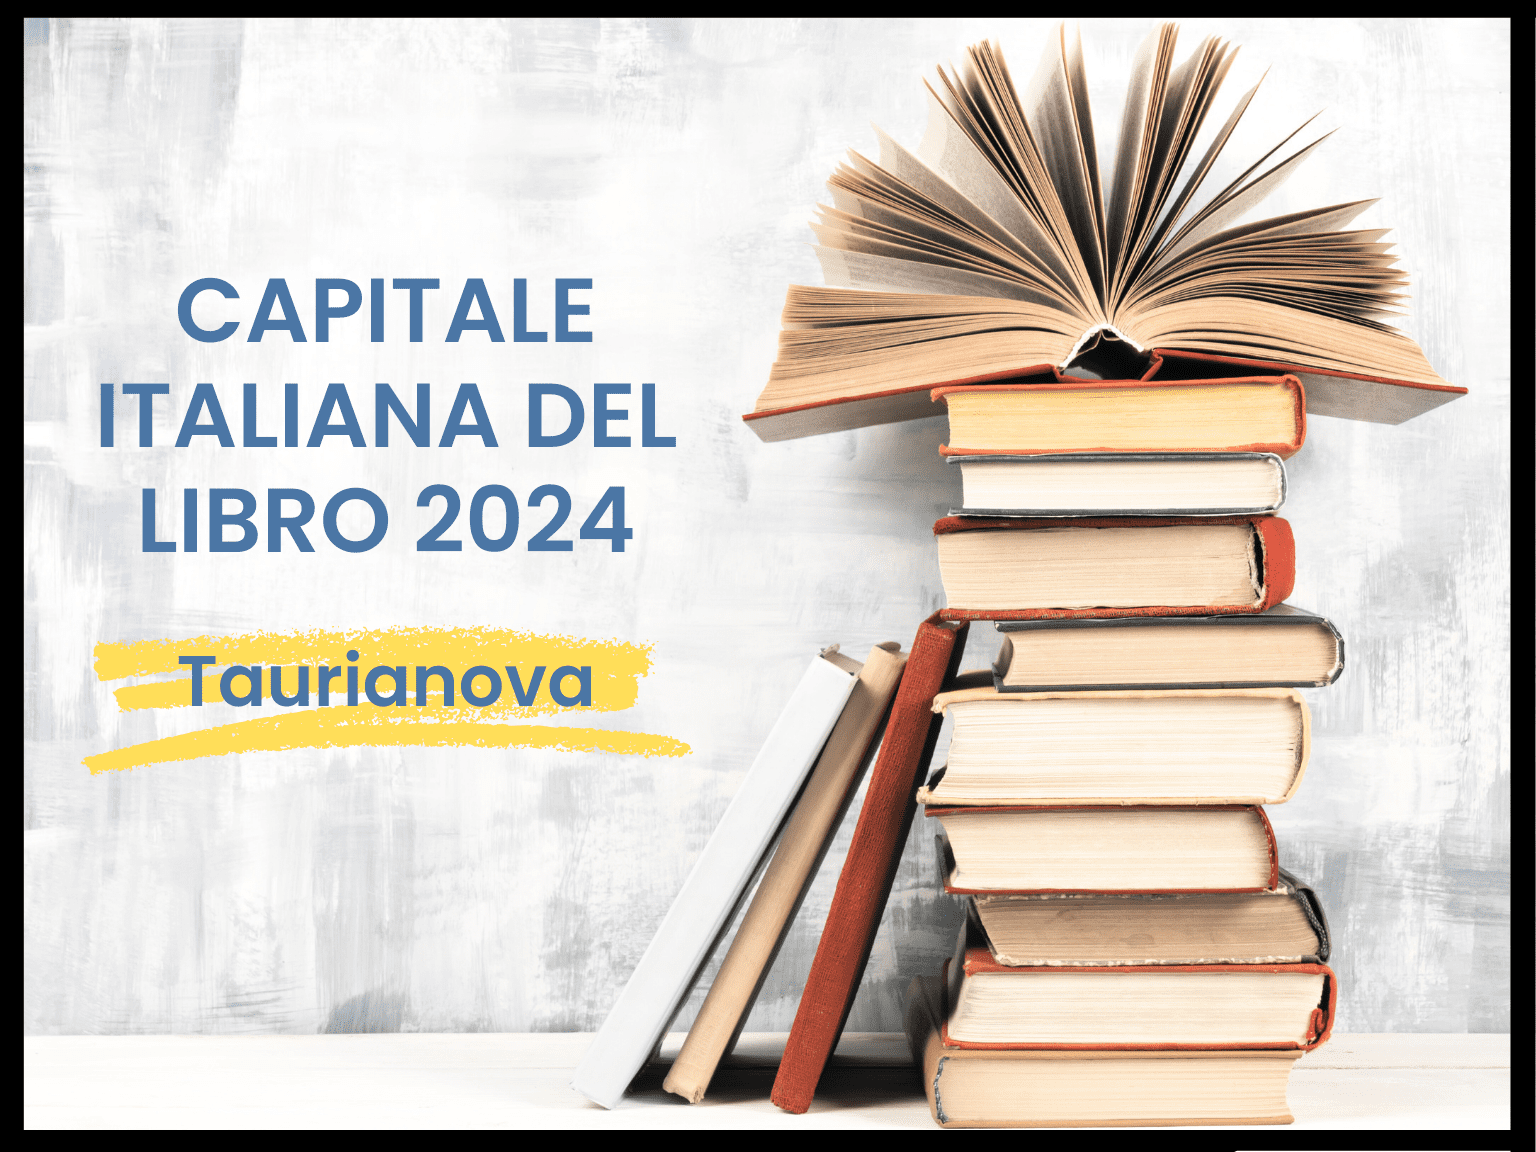 Capitale italiana del libro 2024. Le polemiche